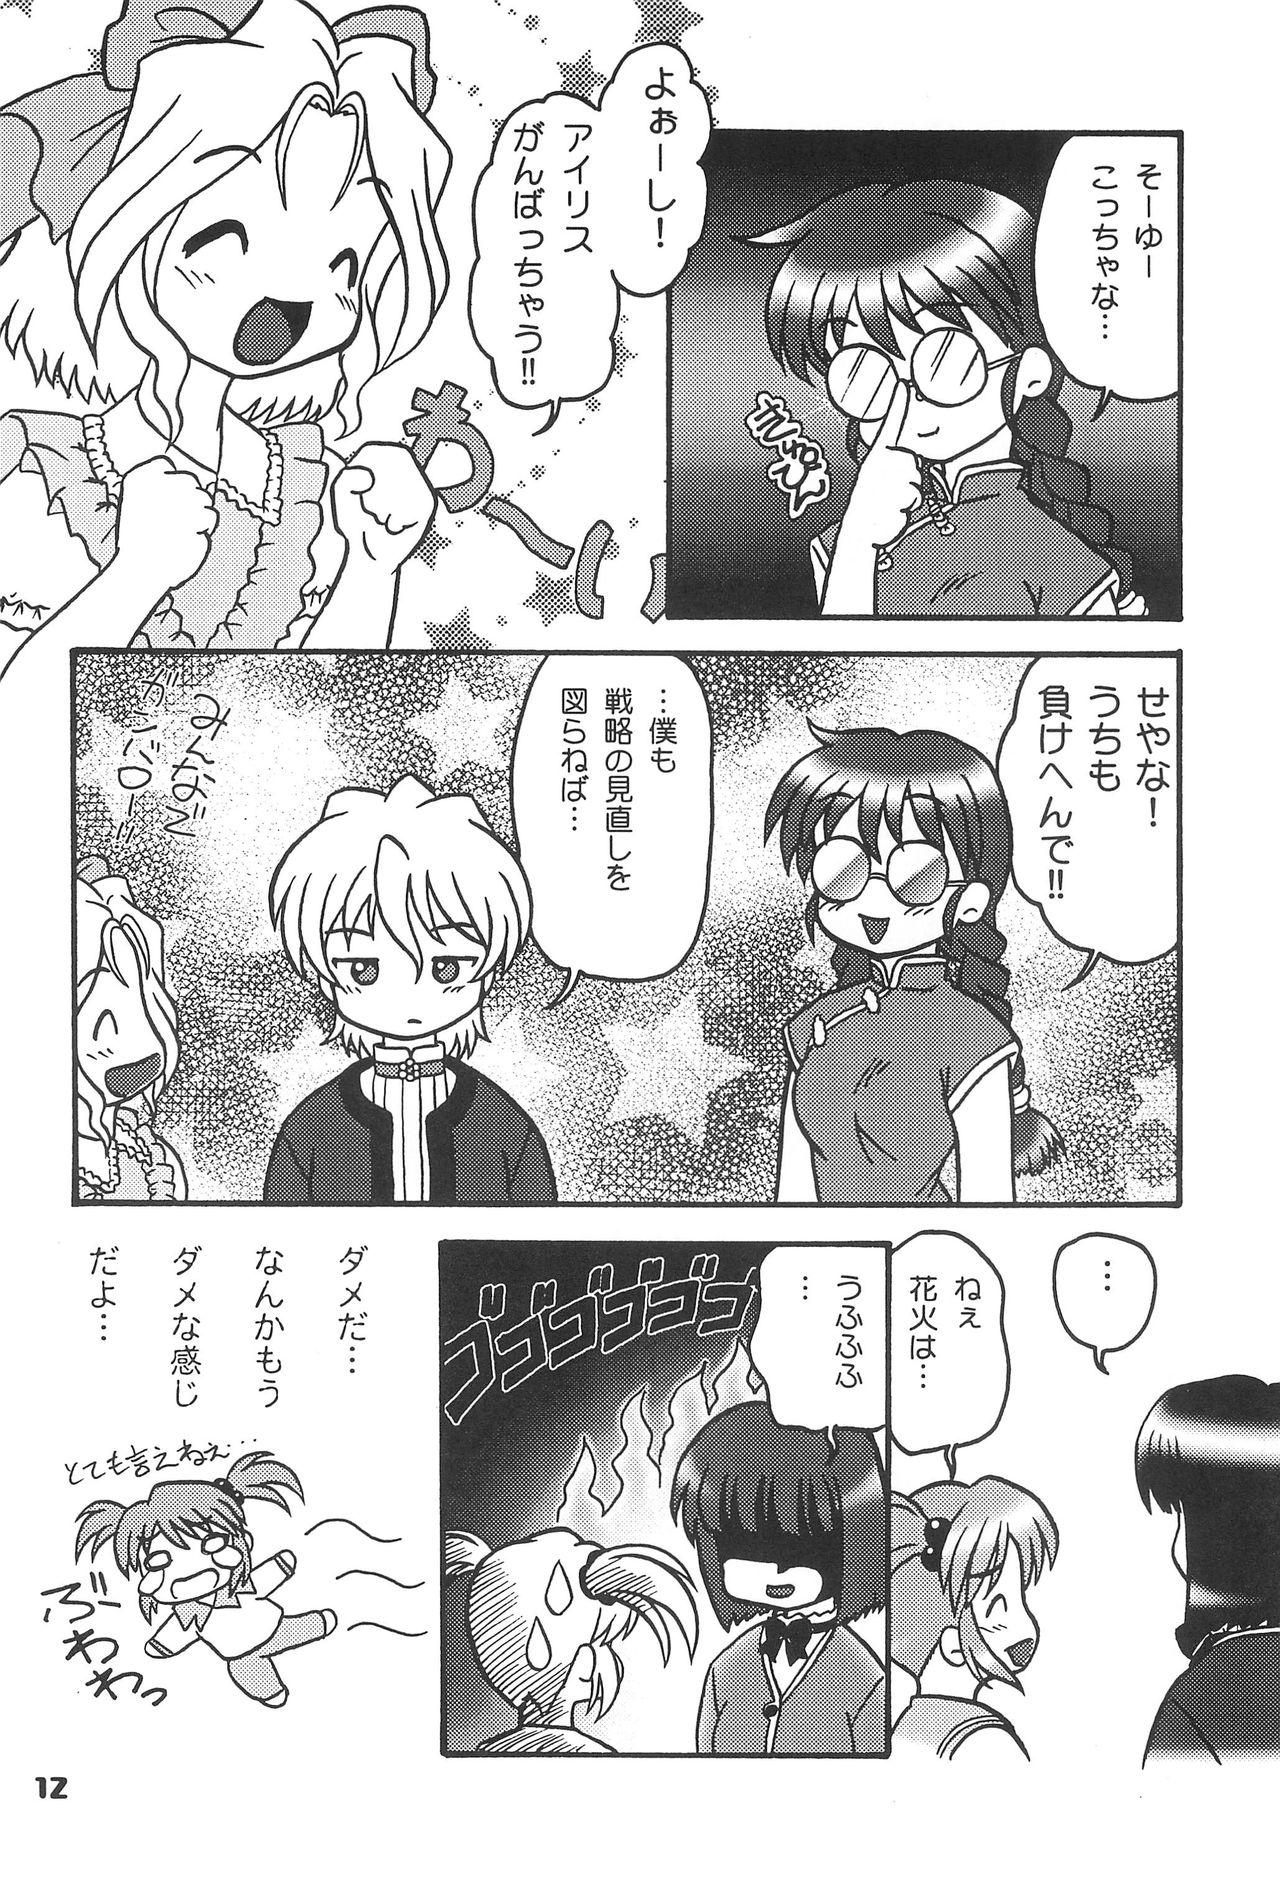 Infiel Kono Chiisana Mune no Uchi 2 - Sakura taisen Aunty - Page 11